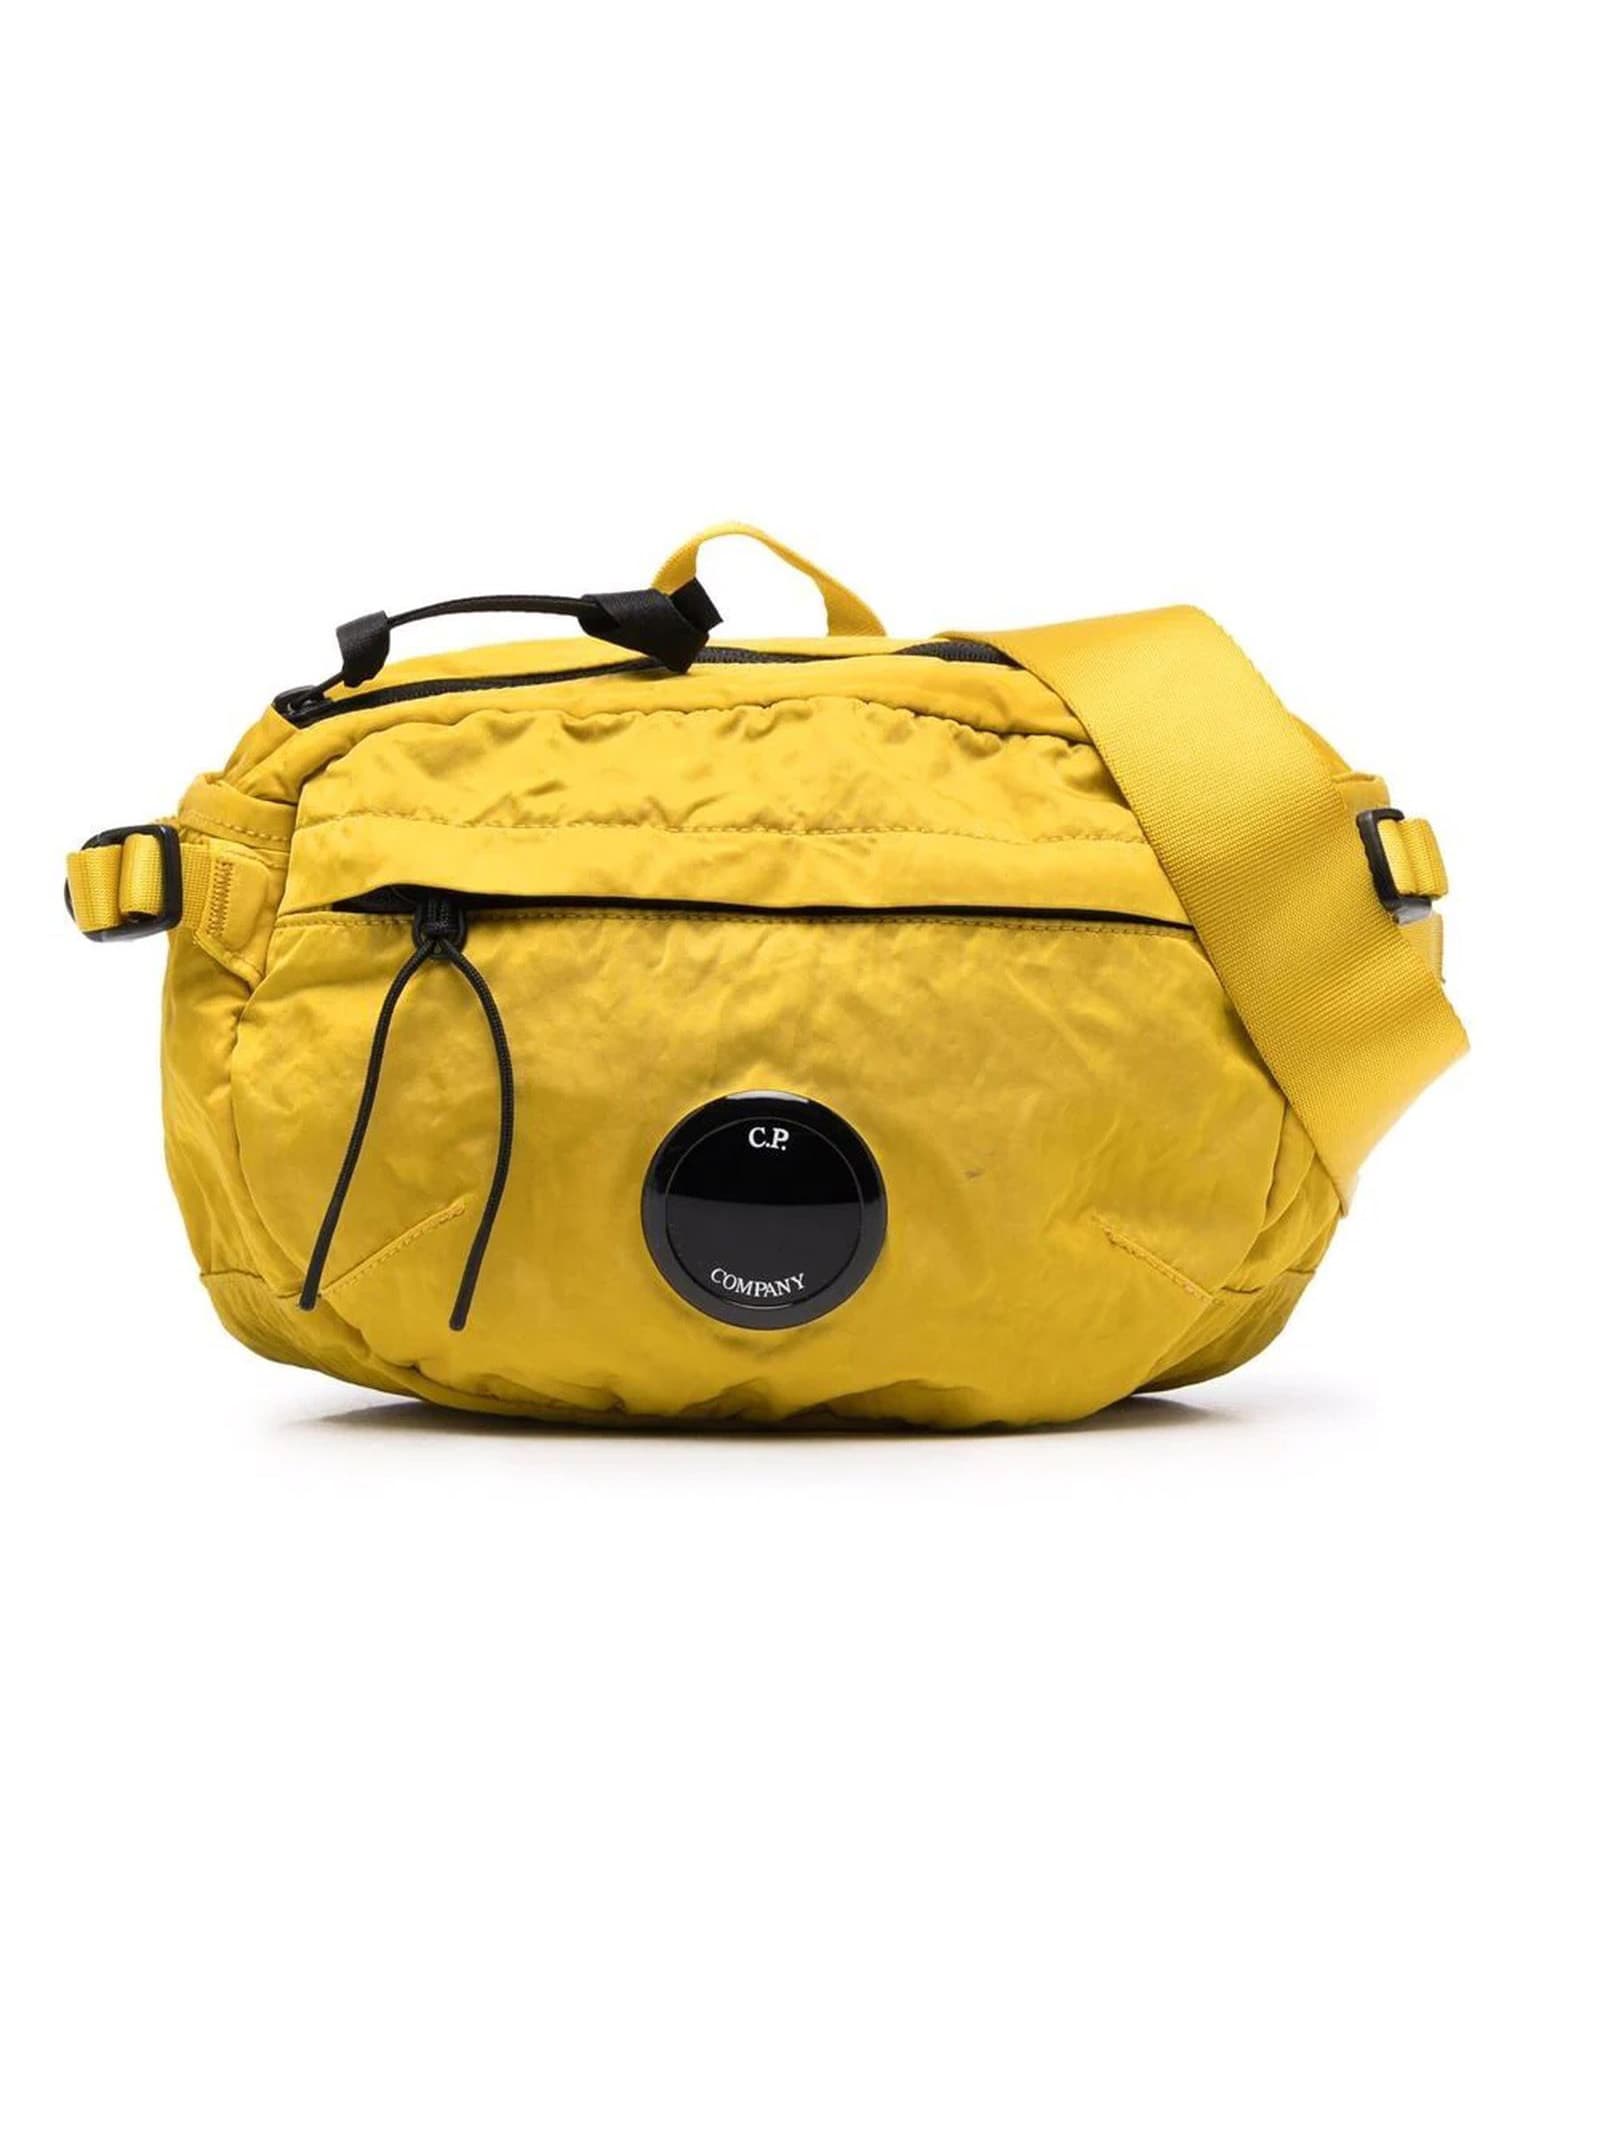 C.P. Company Yellow Shoulder Bag